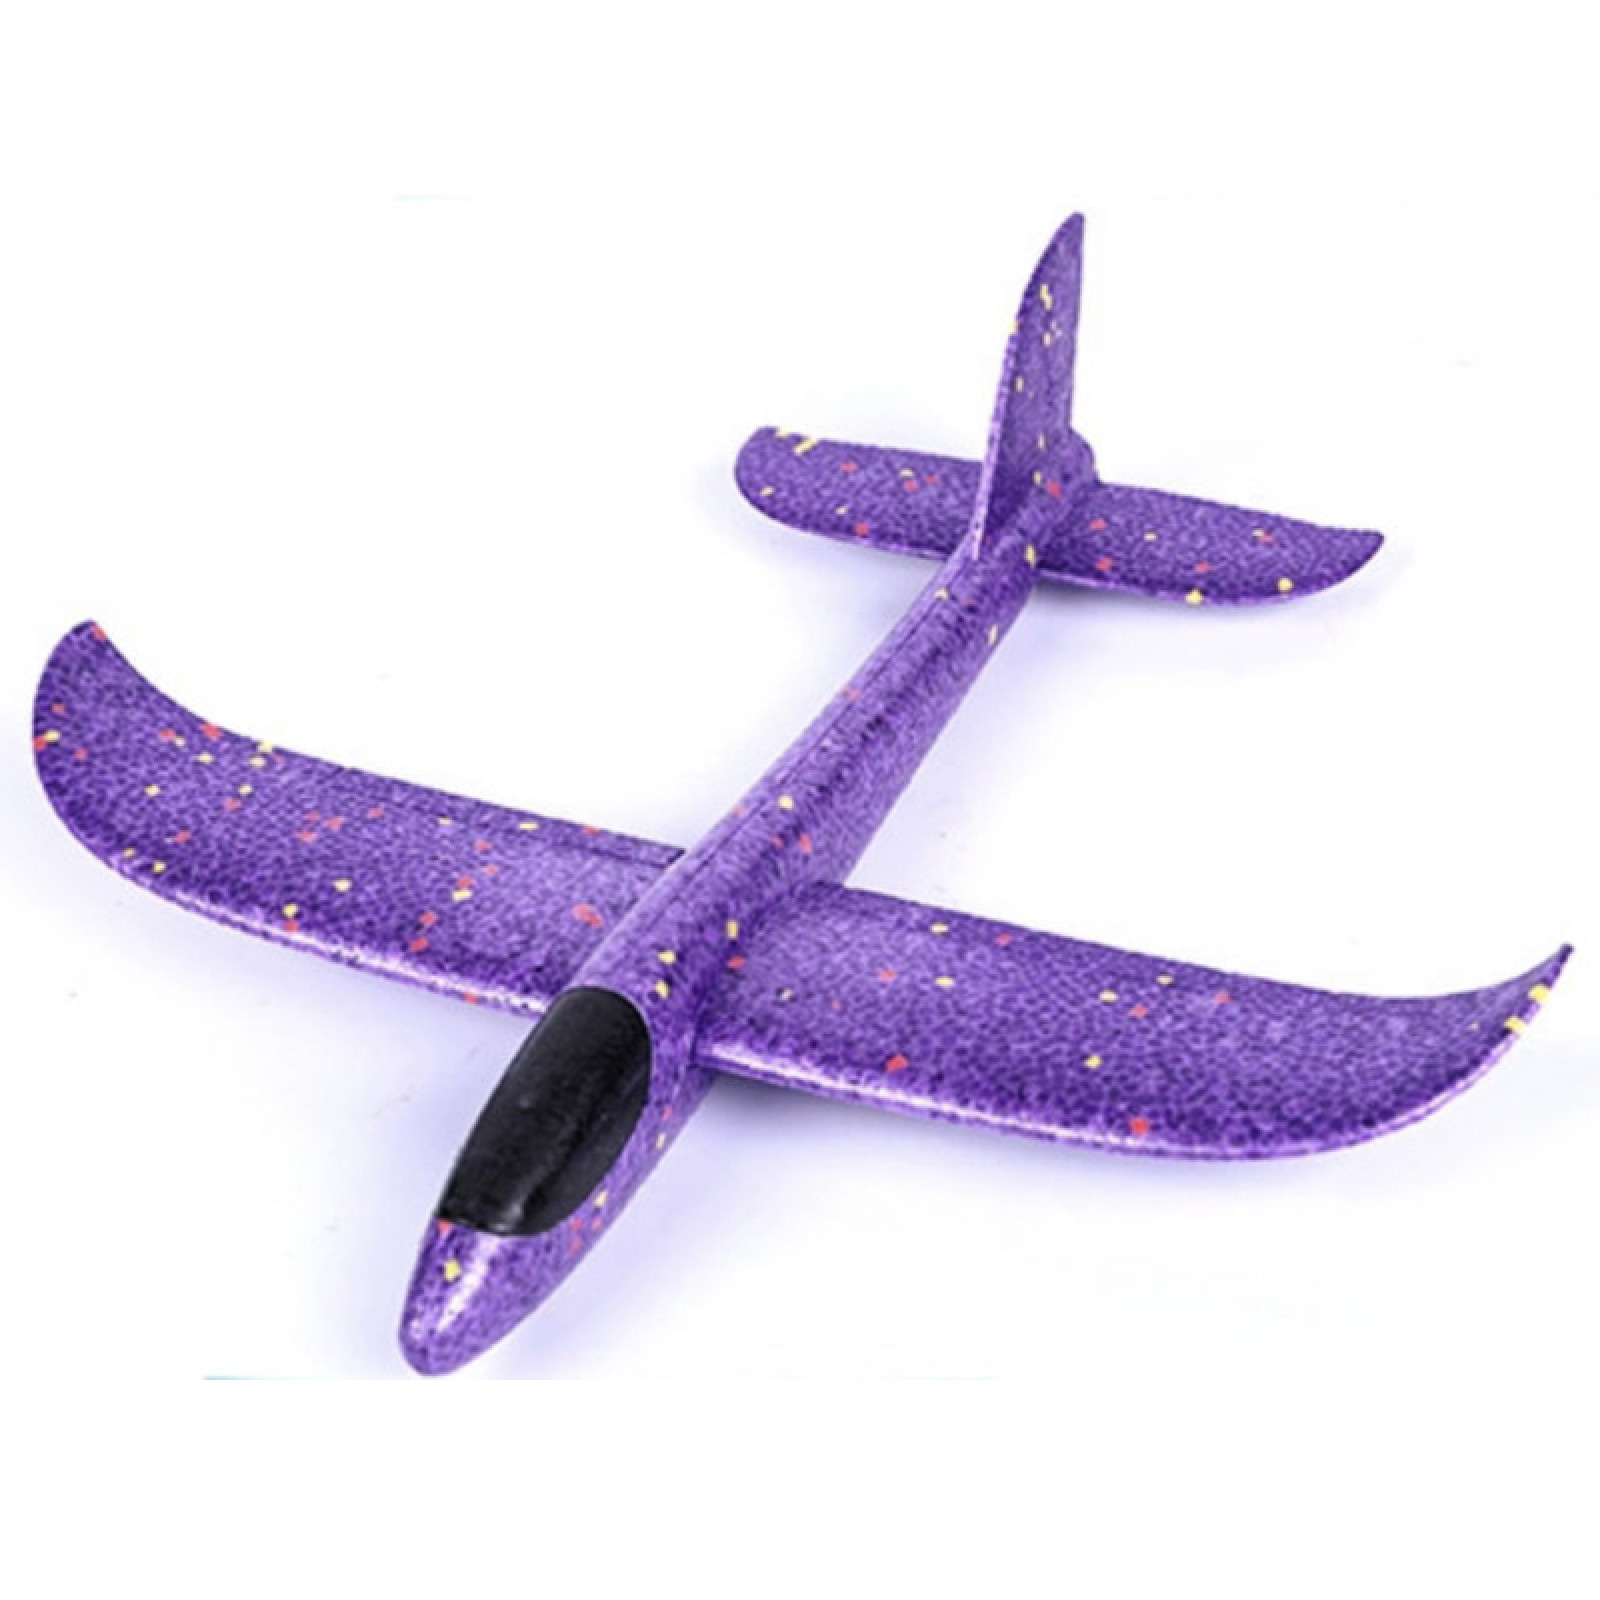 Детский метательный планирующий самолетик Max 49 см фиолетовый 149825